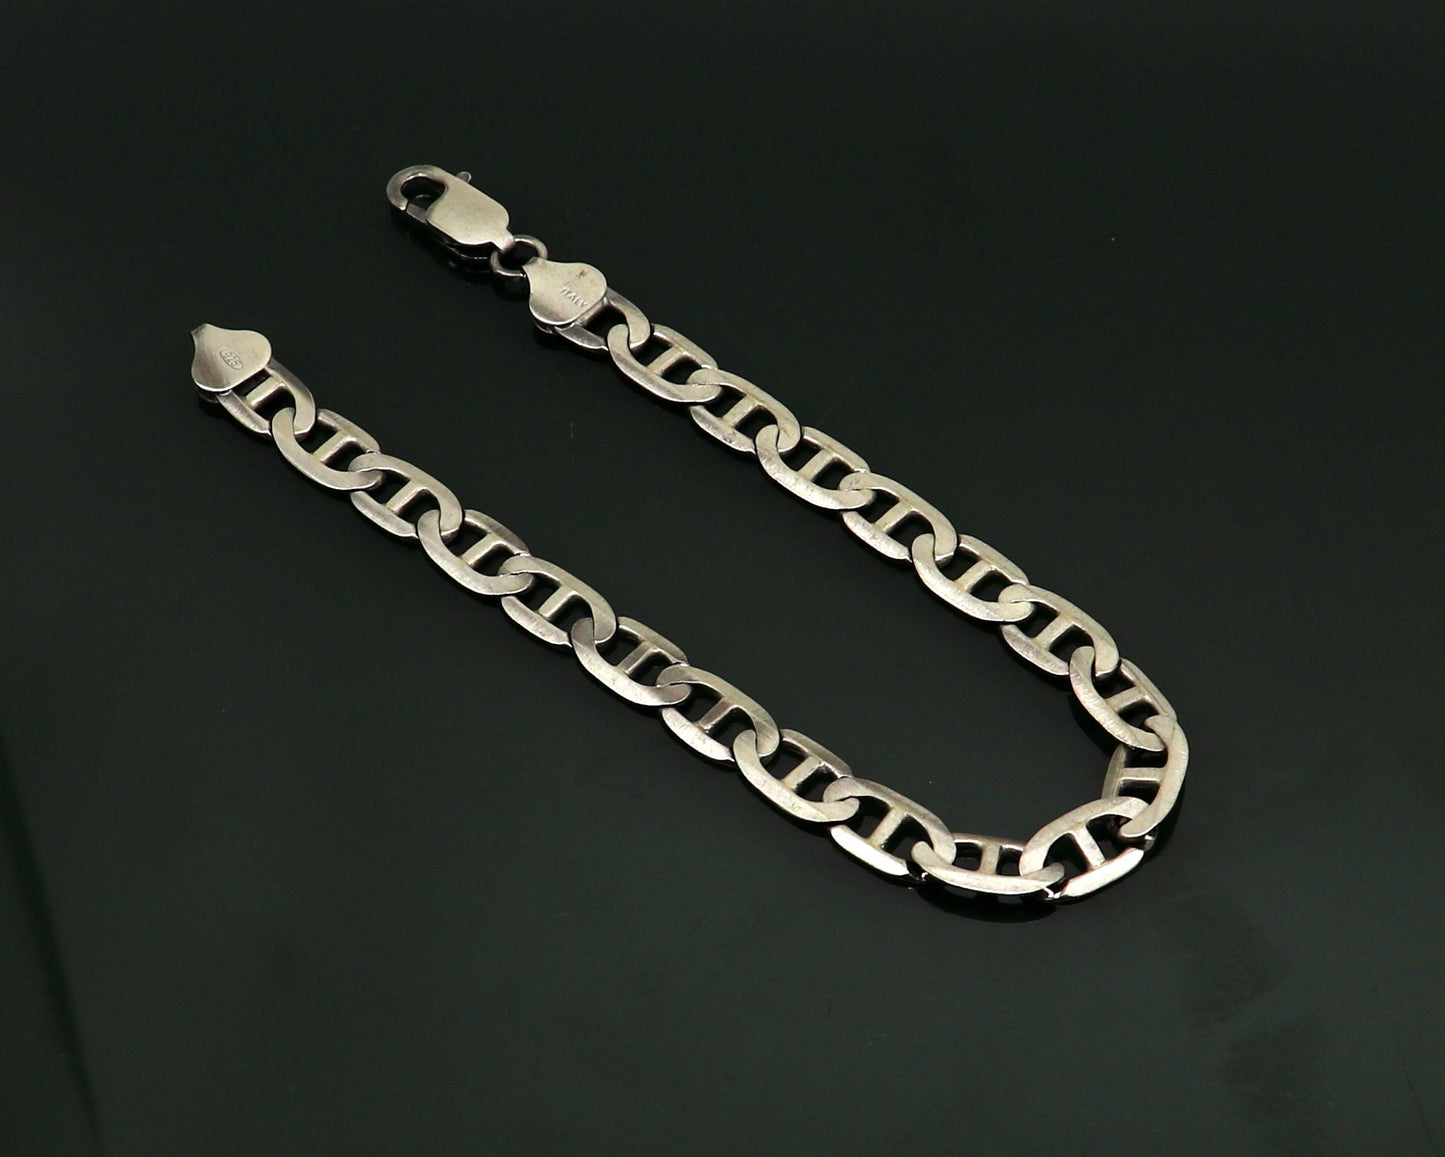 925 Sterling silver handmade designer flexible oxidized plain link men's bracelet gorgeous Italy made designer jewelry for men's sbr258 - TRIBAL ORNAMENTS